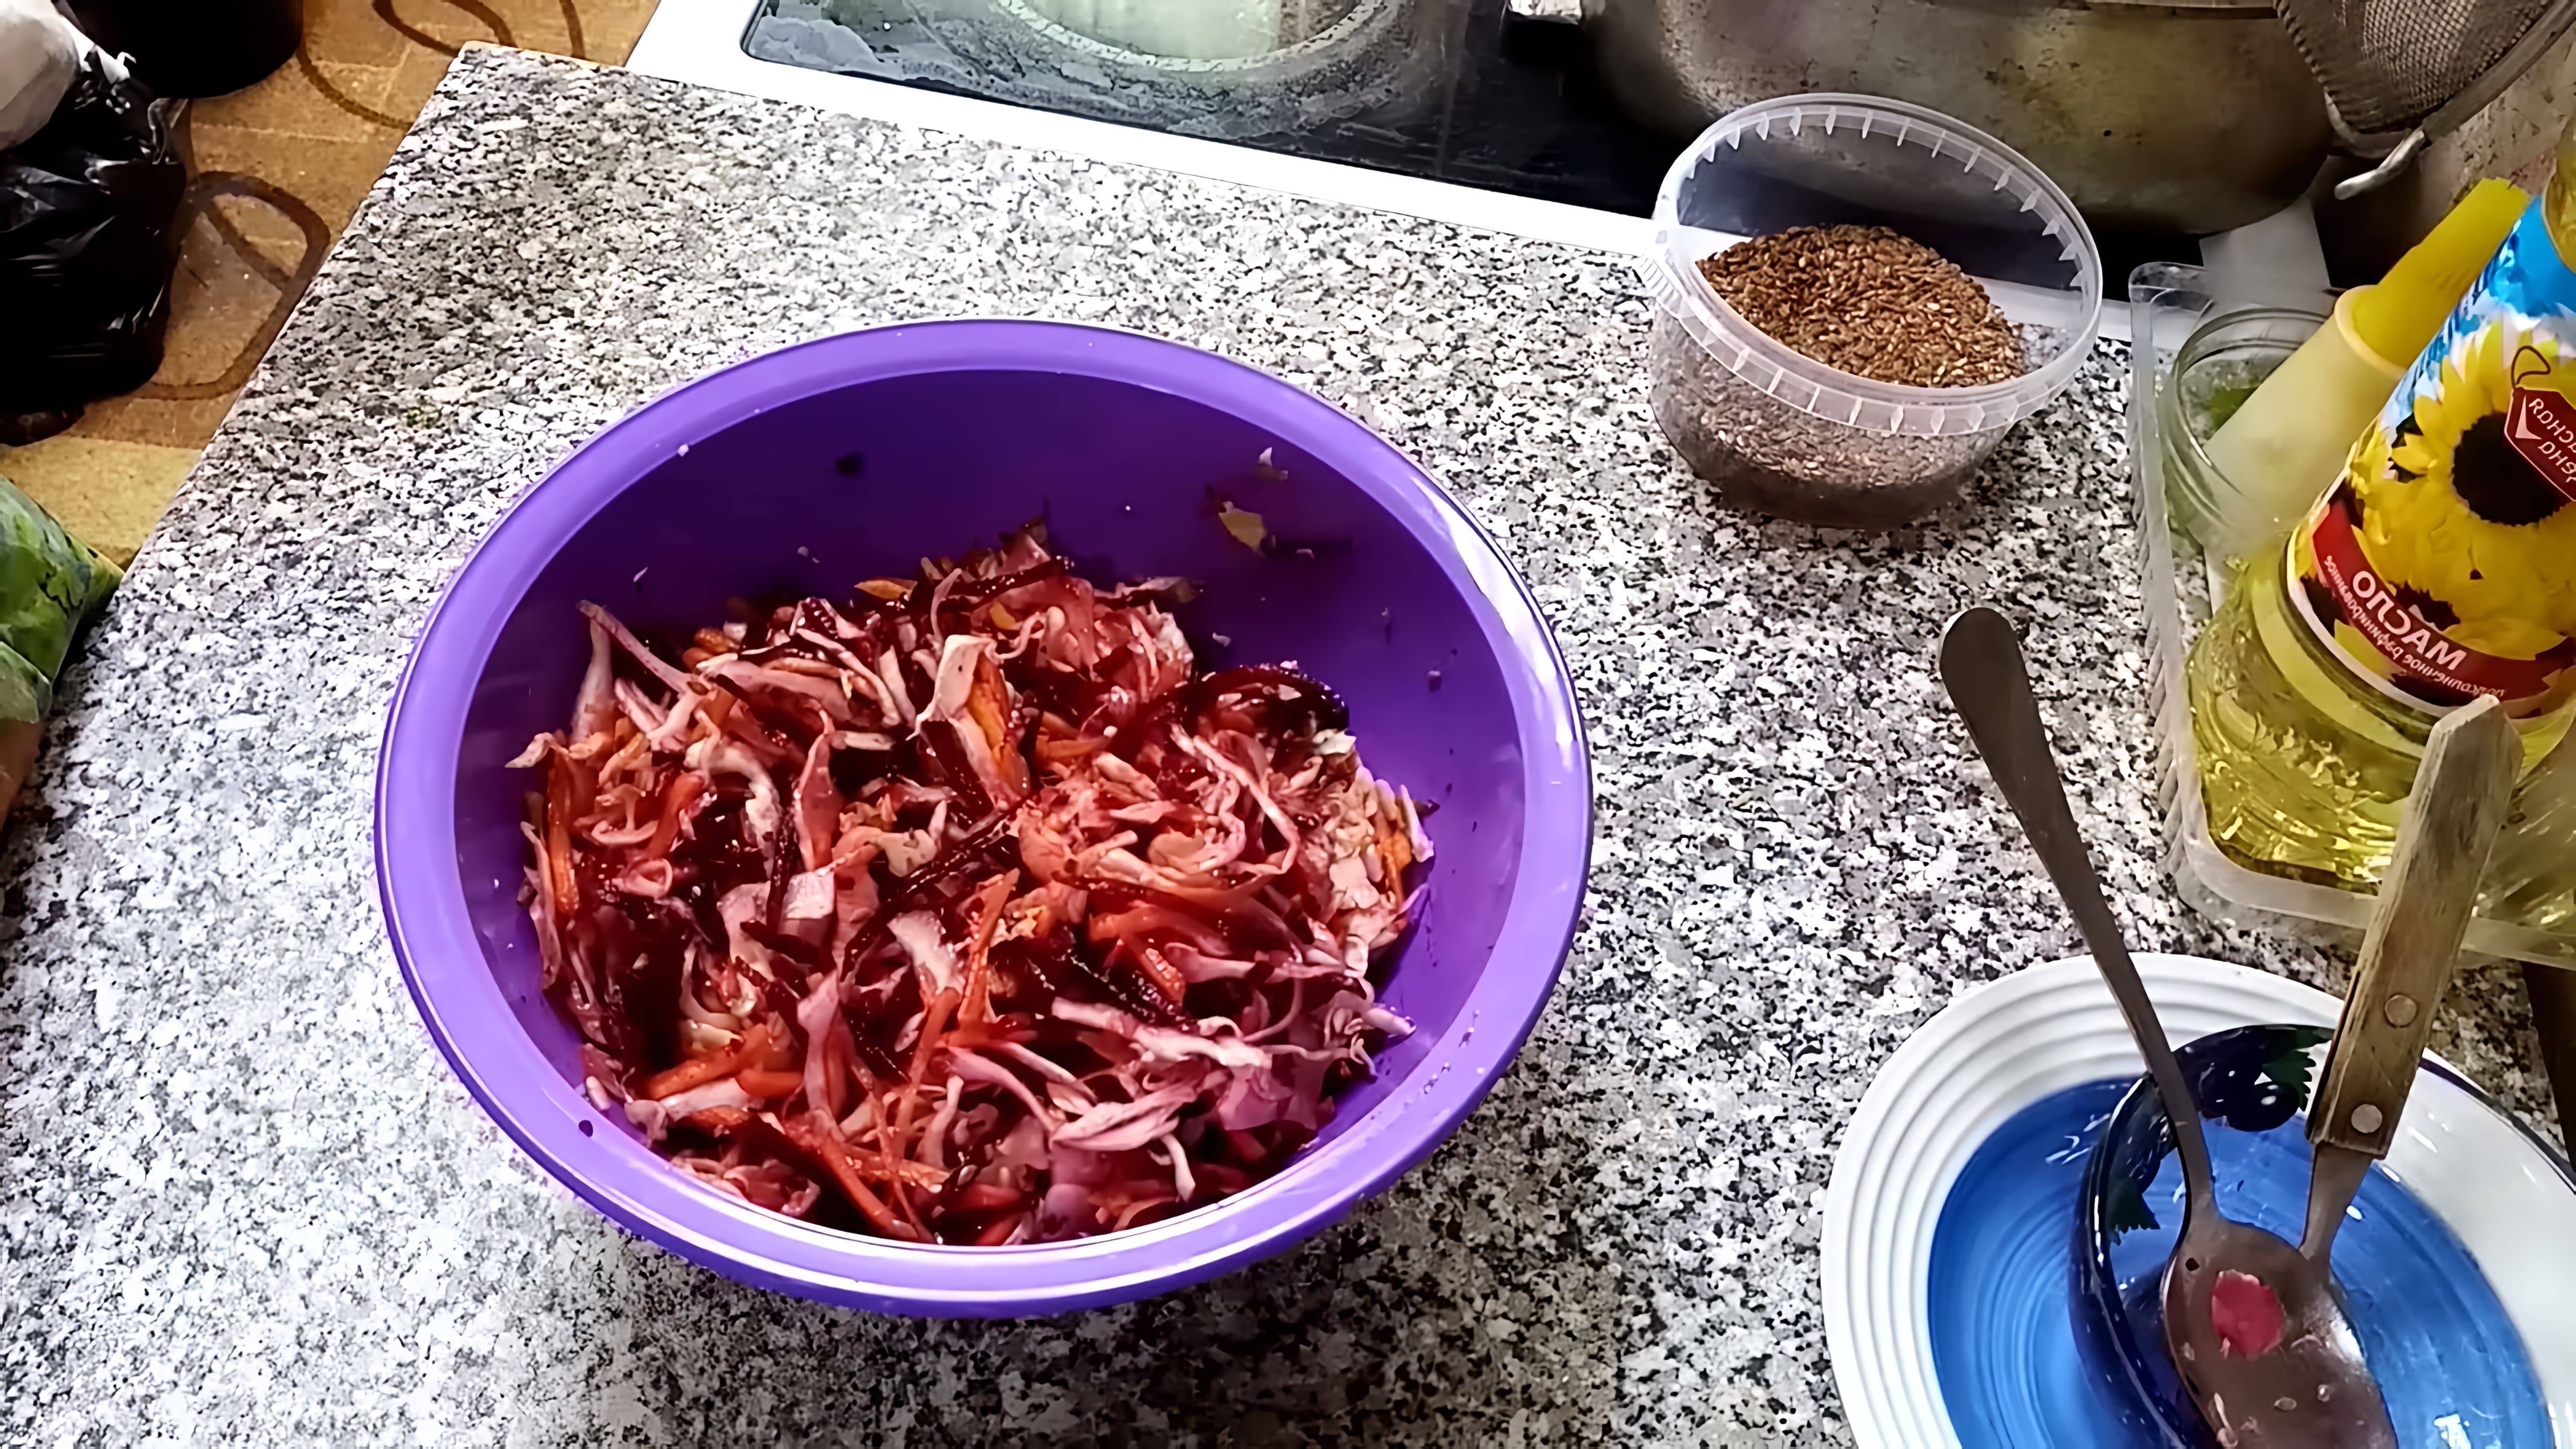 В этом видео демонстрируется процесс приготовления салата "щётка" из сырых овощей